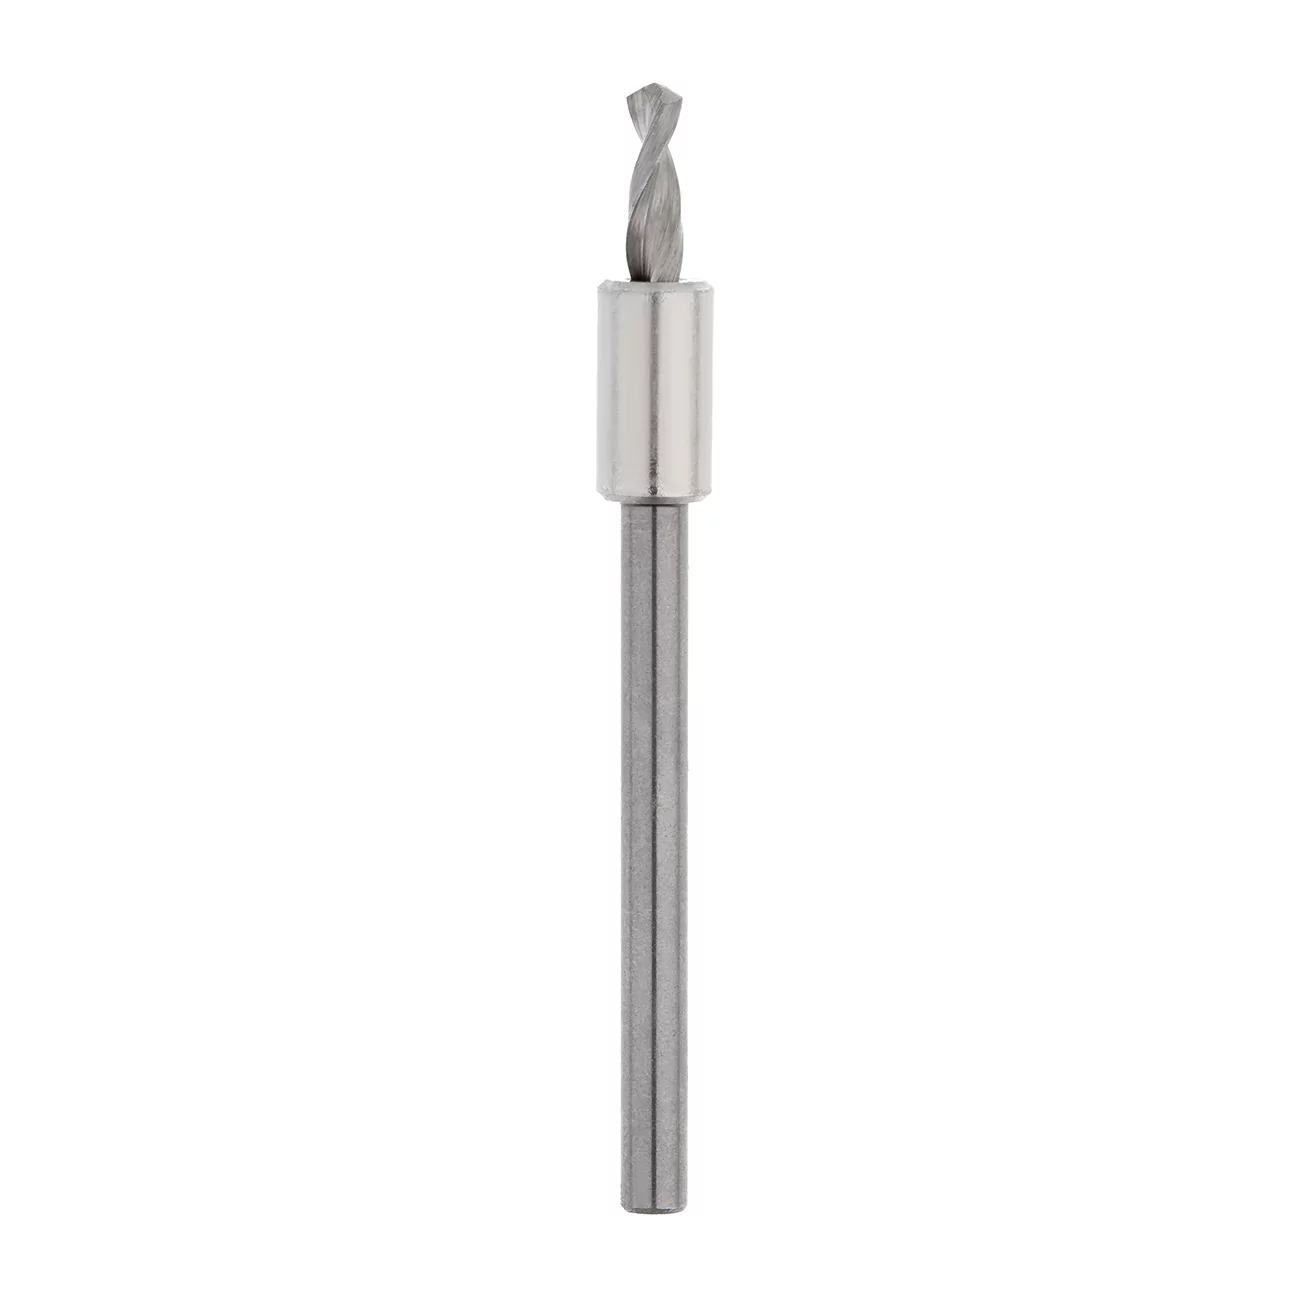 Сверло для штифтов Bi-Pin / Bi-Pin drill bit, 347-0000-1